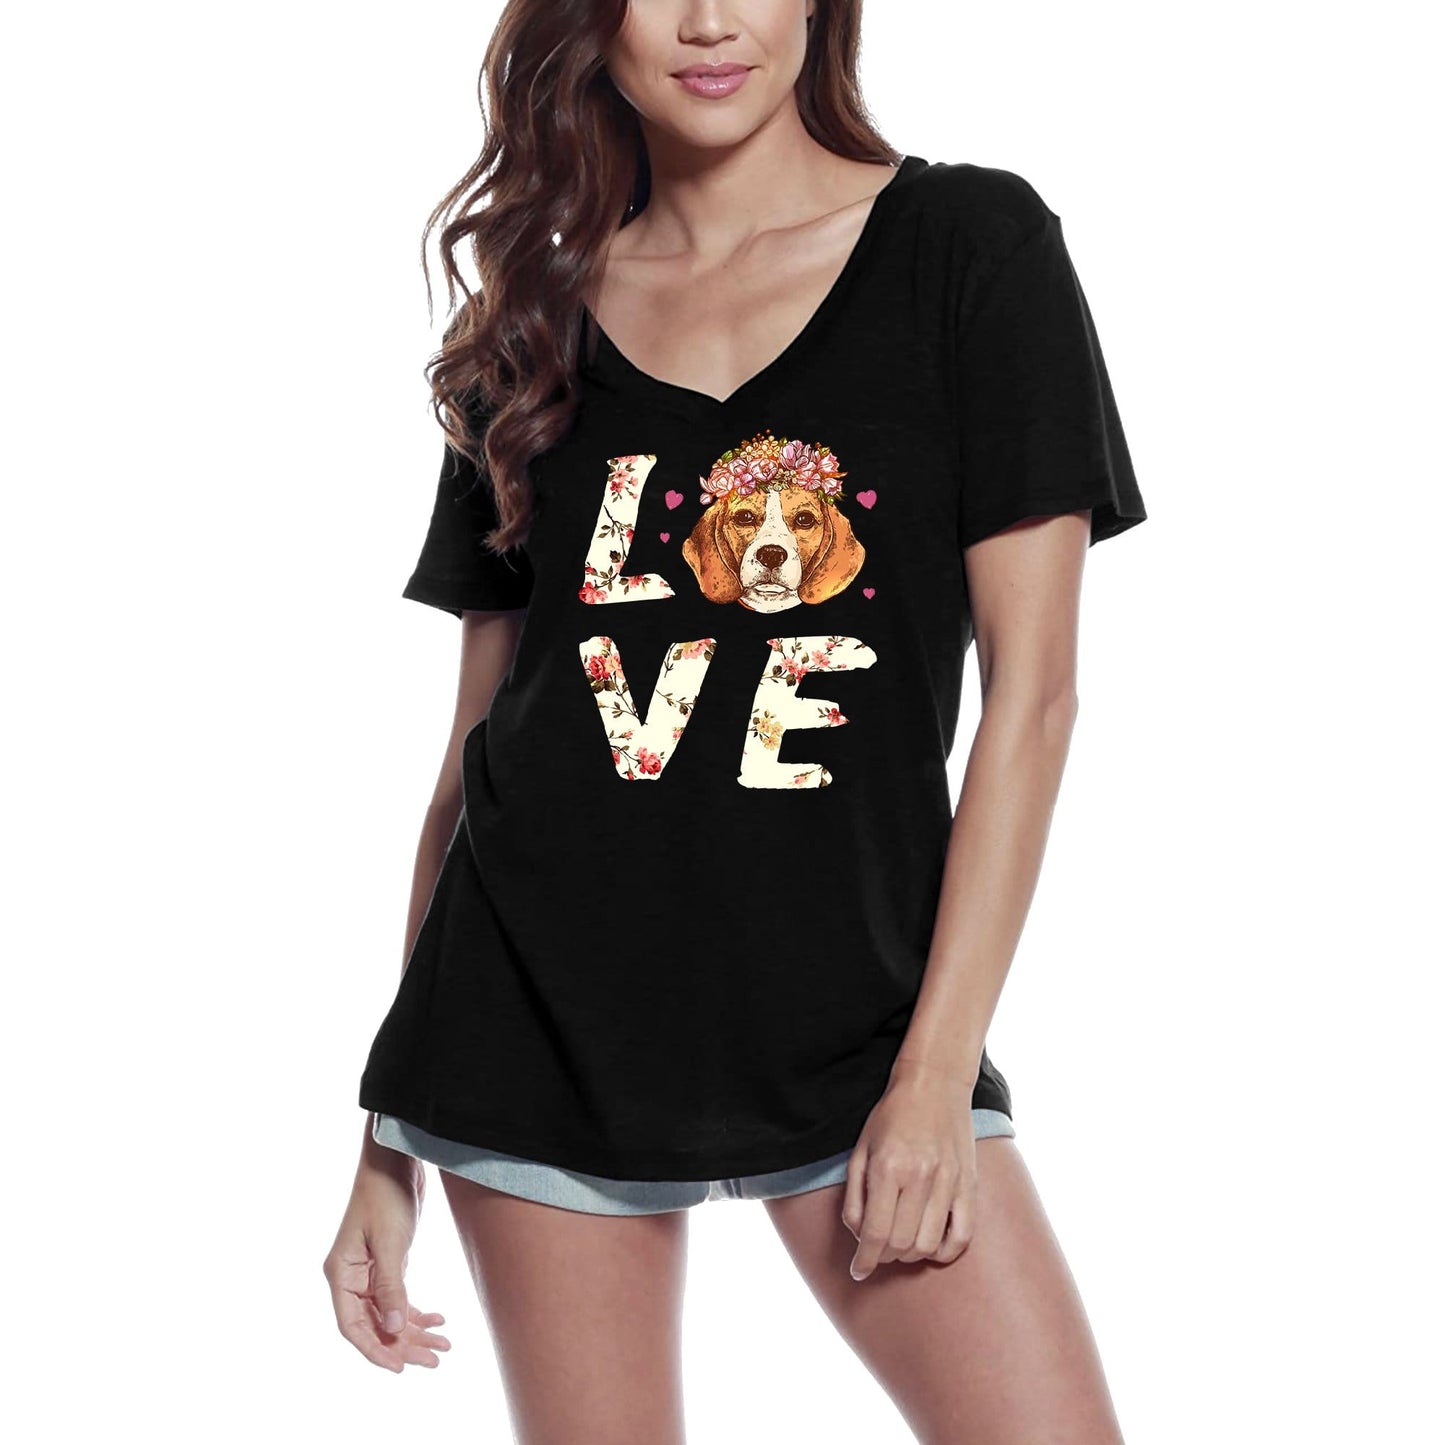 ULTRABASIC Women's T-Shirt Love Dogs - Cute Flower Shirt - Graphic Apparel